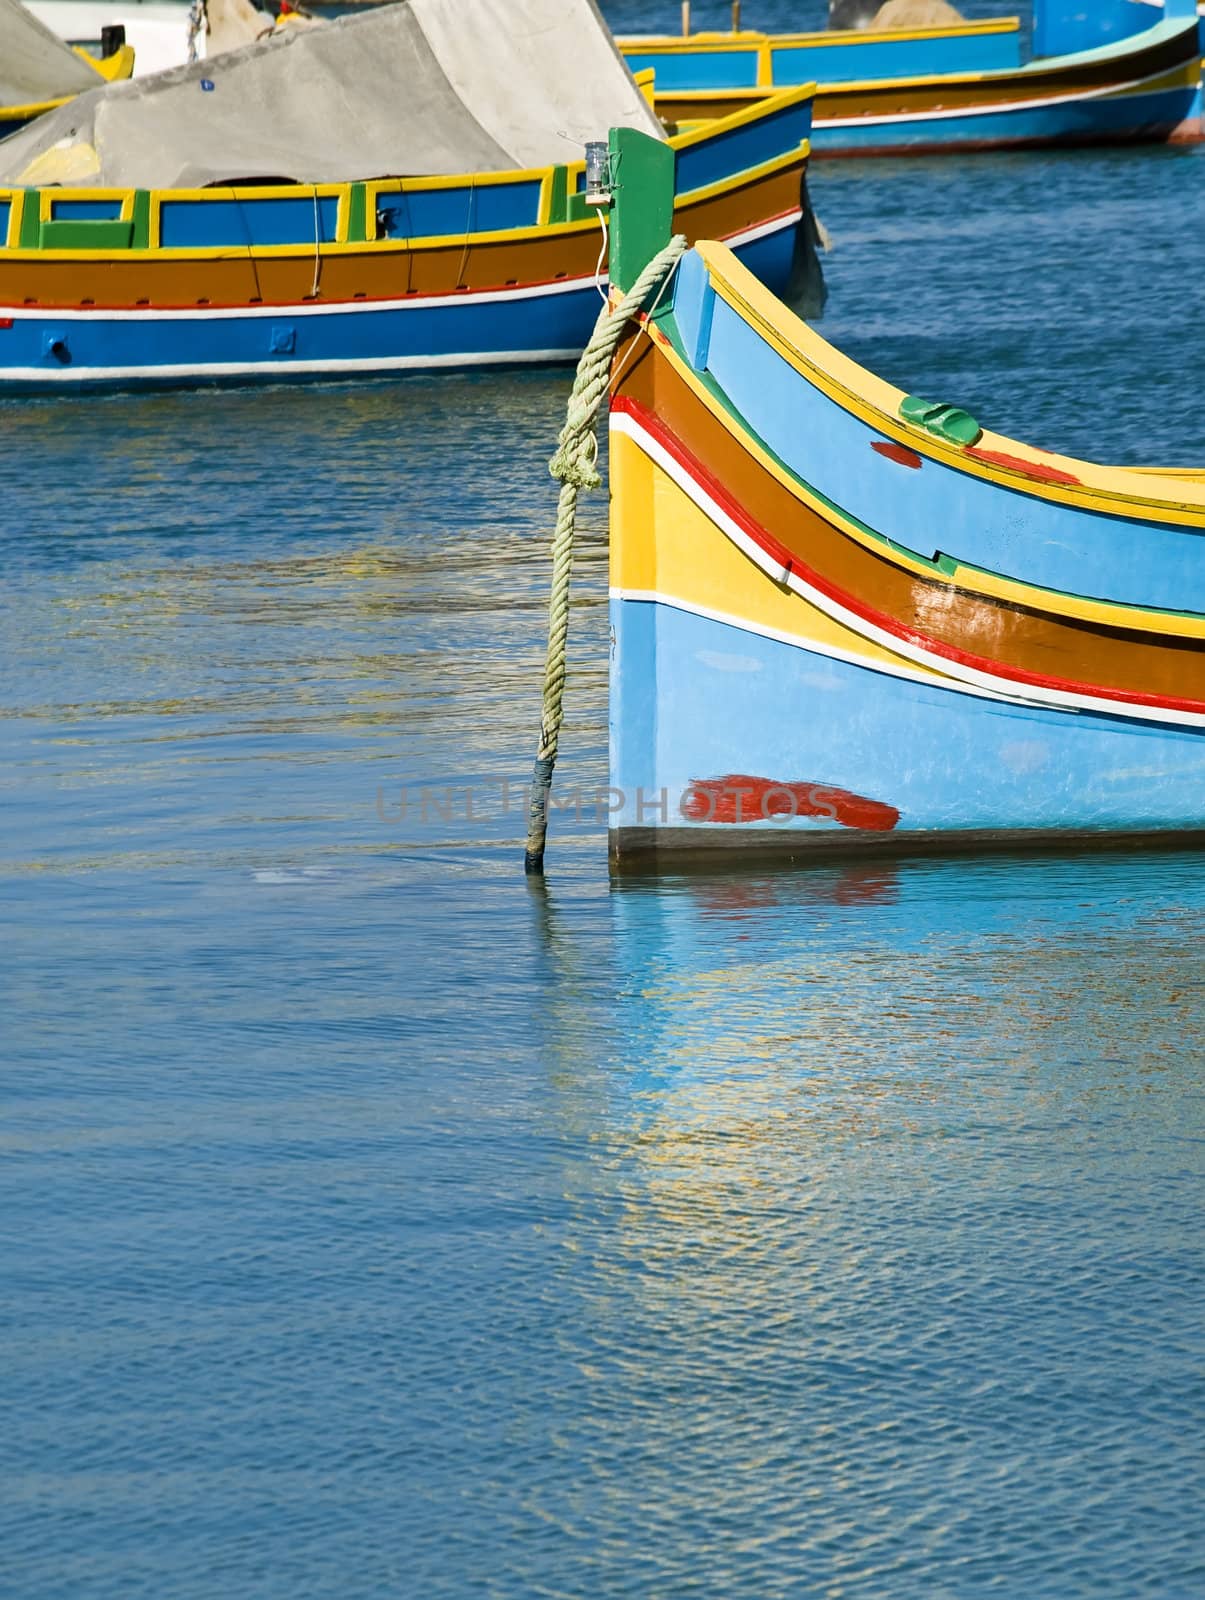 Traditional fishing boats of Malta in the fishing village of Marsaxlokk